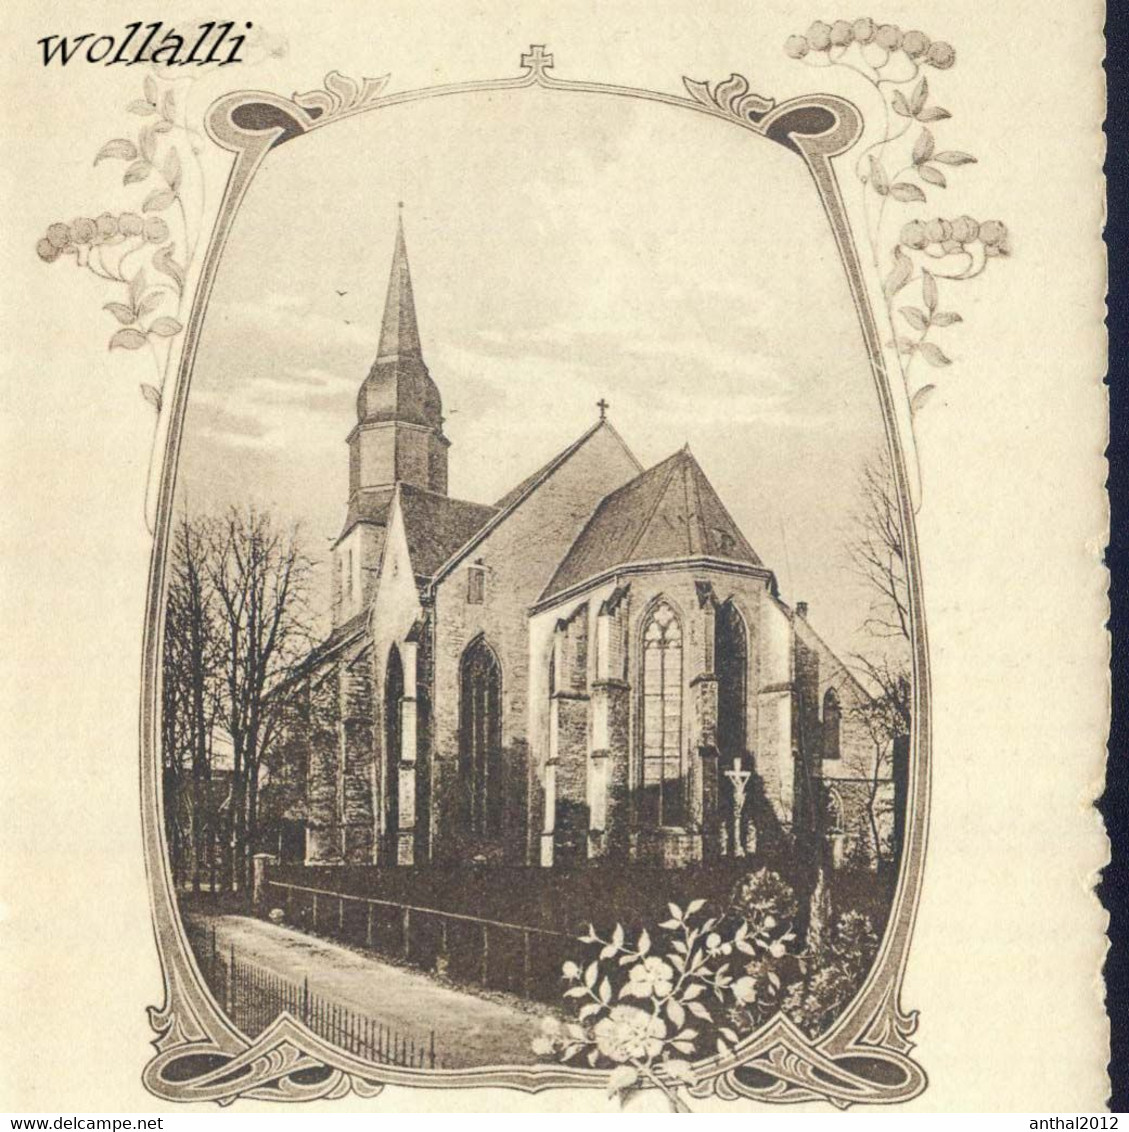 Rarität Passapartout Rahmen Karth. Pfarrkirche Beckum Um 1910 Gezackt W. Schwinn - Beckum